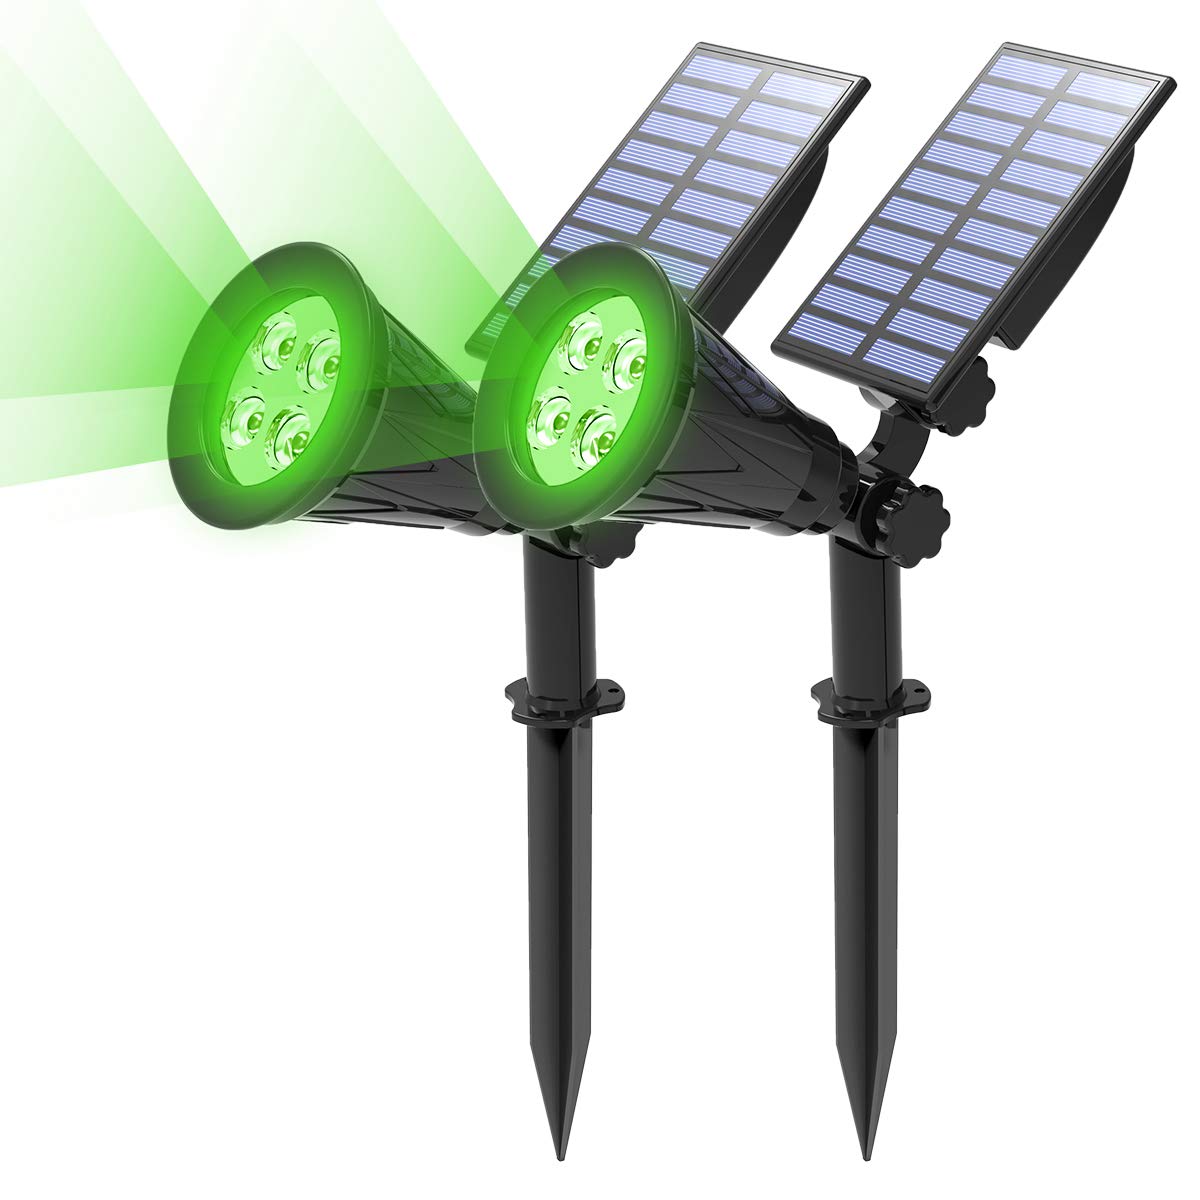 T-SUN Gartenstrahler Solar, 2 Stück 4 LED Garten Solarlampe Solarleuchten, Helle Garten-Licht, 2 Beleuchtungsmodi, Sicherheitsbeleuchtung,Großes Außenlicht für Rasen, Wege, Auffahrt, Terrasse (Grün)